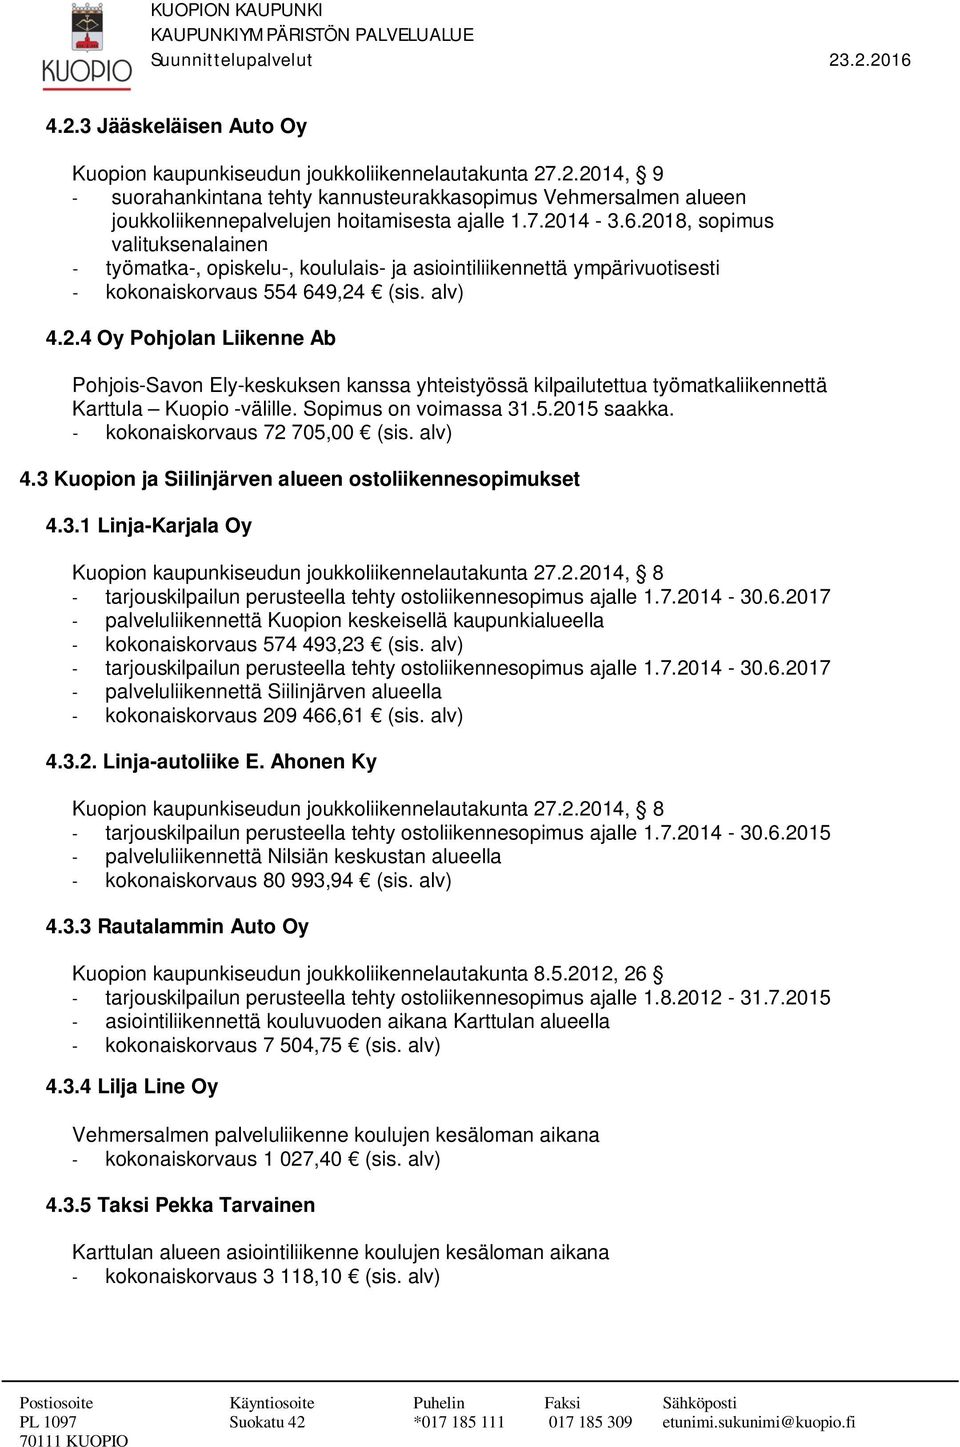 Sopimus on voimassa 31.5.2015 saakka. - kokonaiskorvaus 72 705,00 (sis. alv) 4.3 Kuopion ja Siilinjärven alueen ostoliikennesopimukset 4.3.1 Linja-Karjala Oy Kuopion kaupunkiseudun joukkoliikennelautakunta 27.